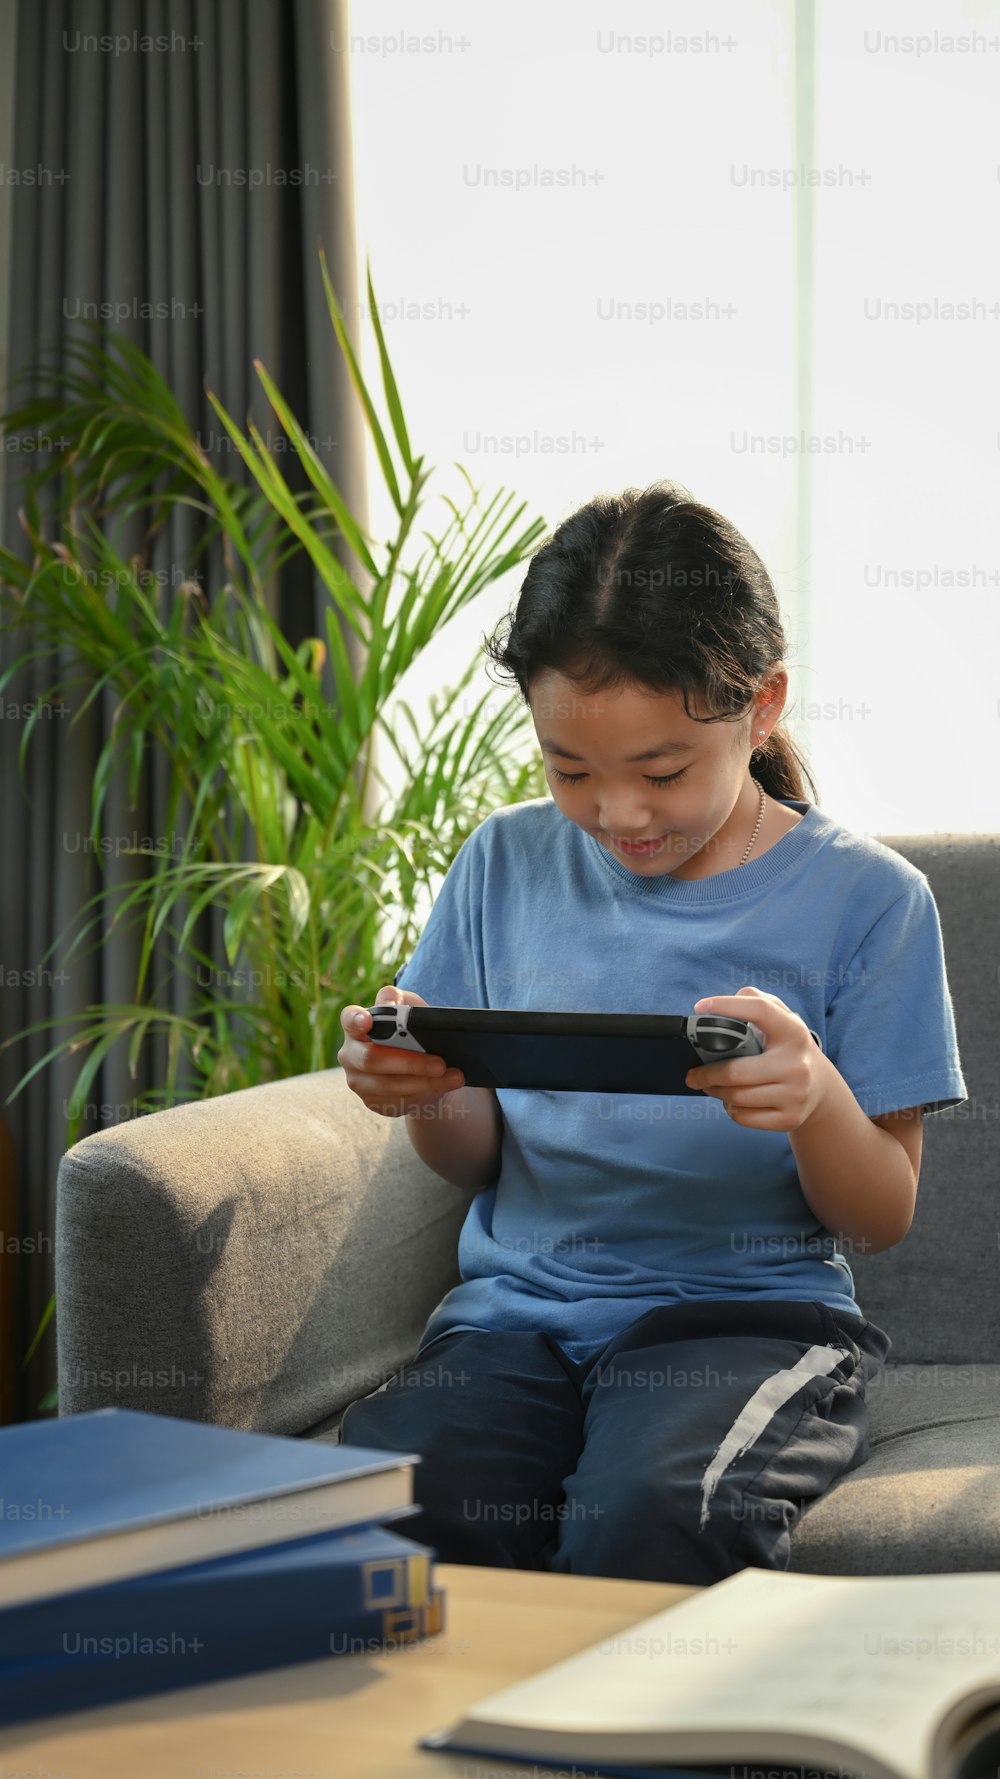 Retrato da menina asiática jovem que joga jogos e sentada no sofá na sala de estar.